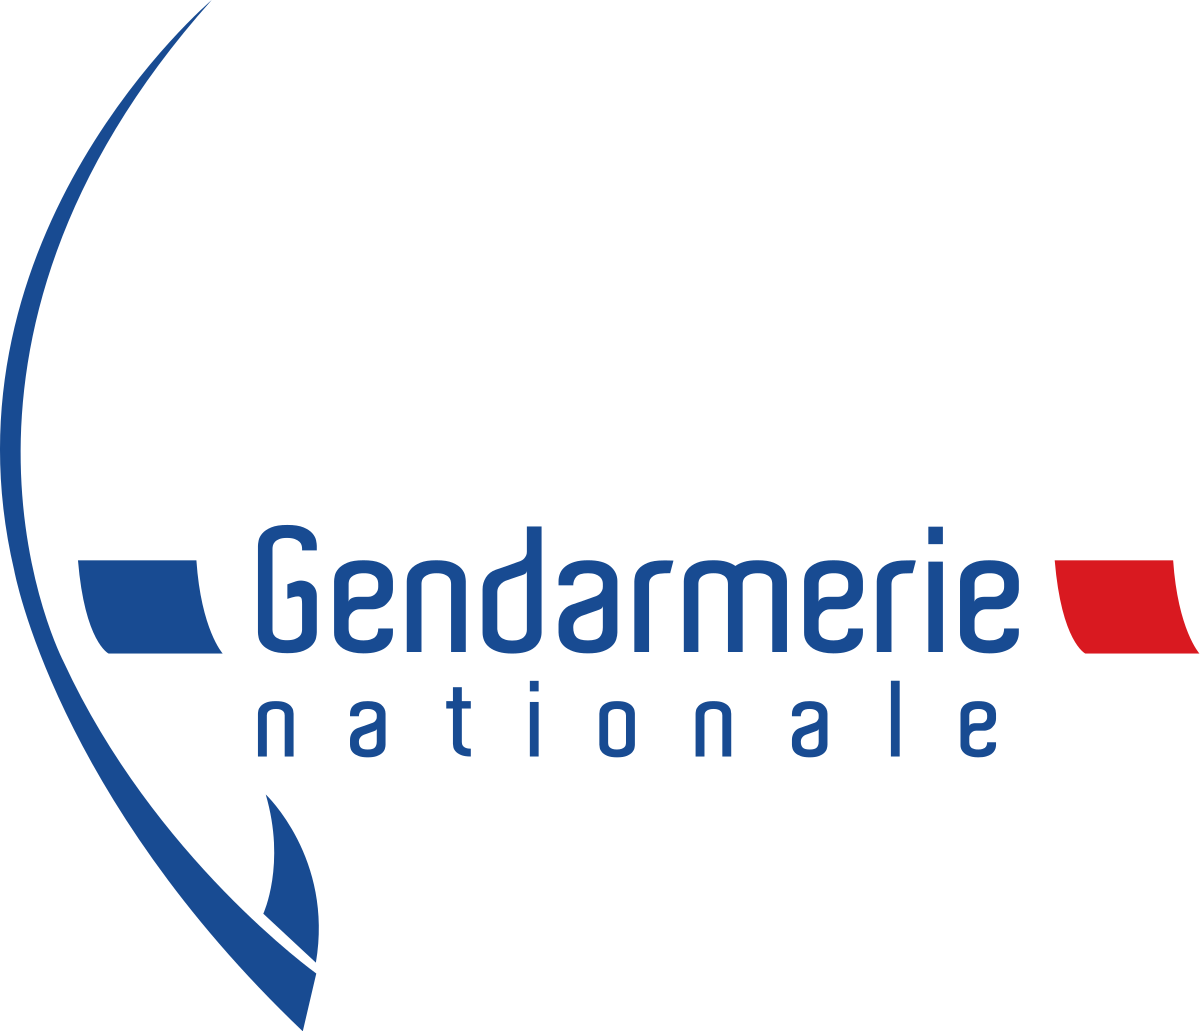 Gendarmerie_nationale.png